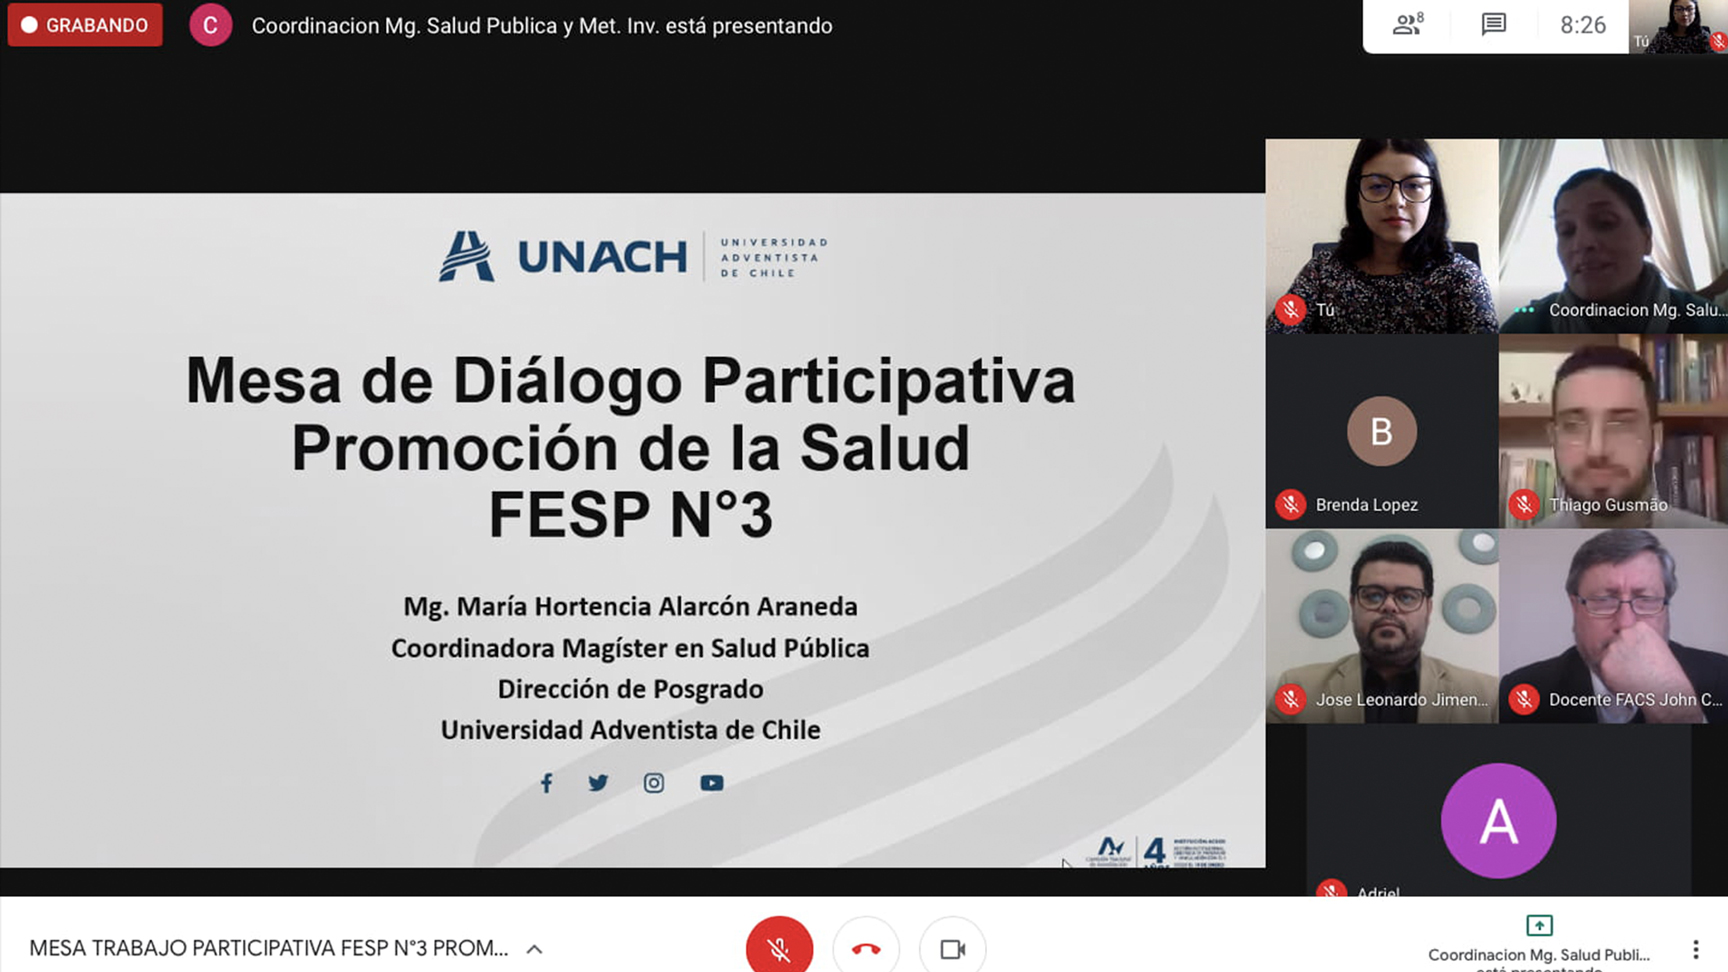 Participan en discusión sobre la promoción de la salud en contexto latinoamericano y adventista